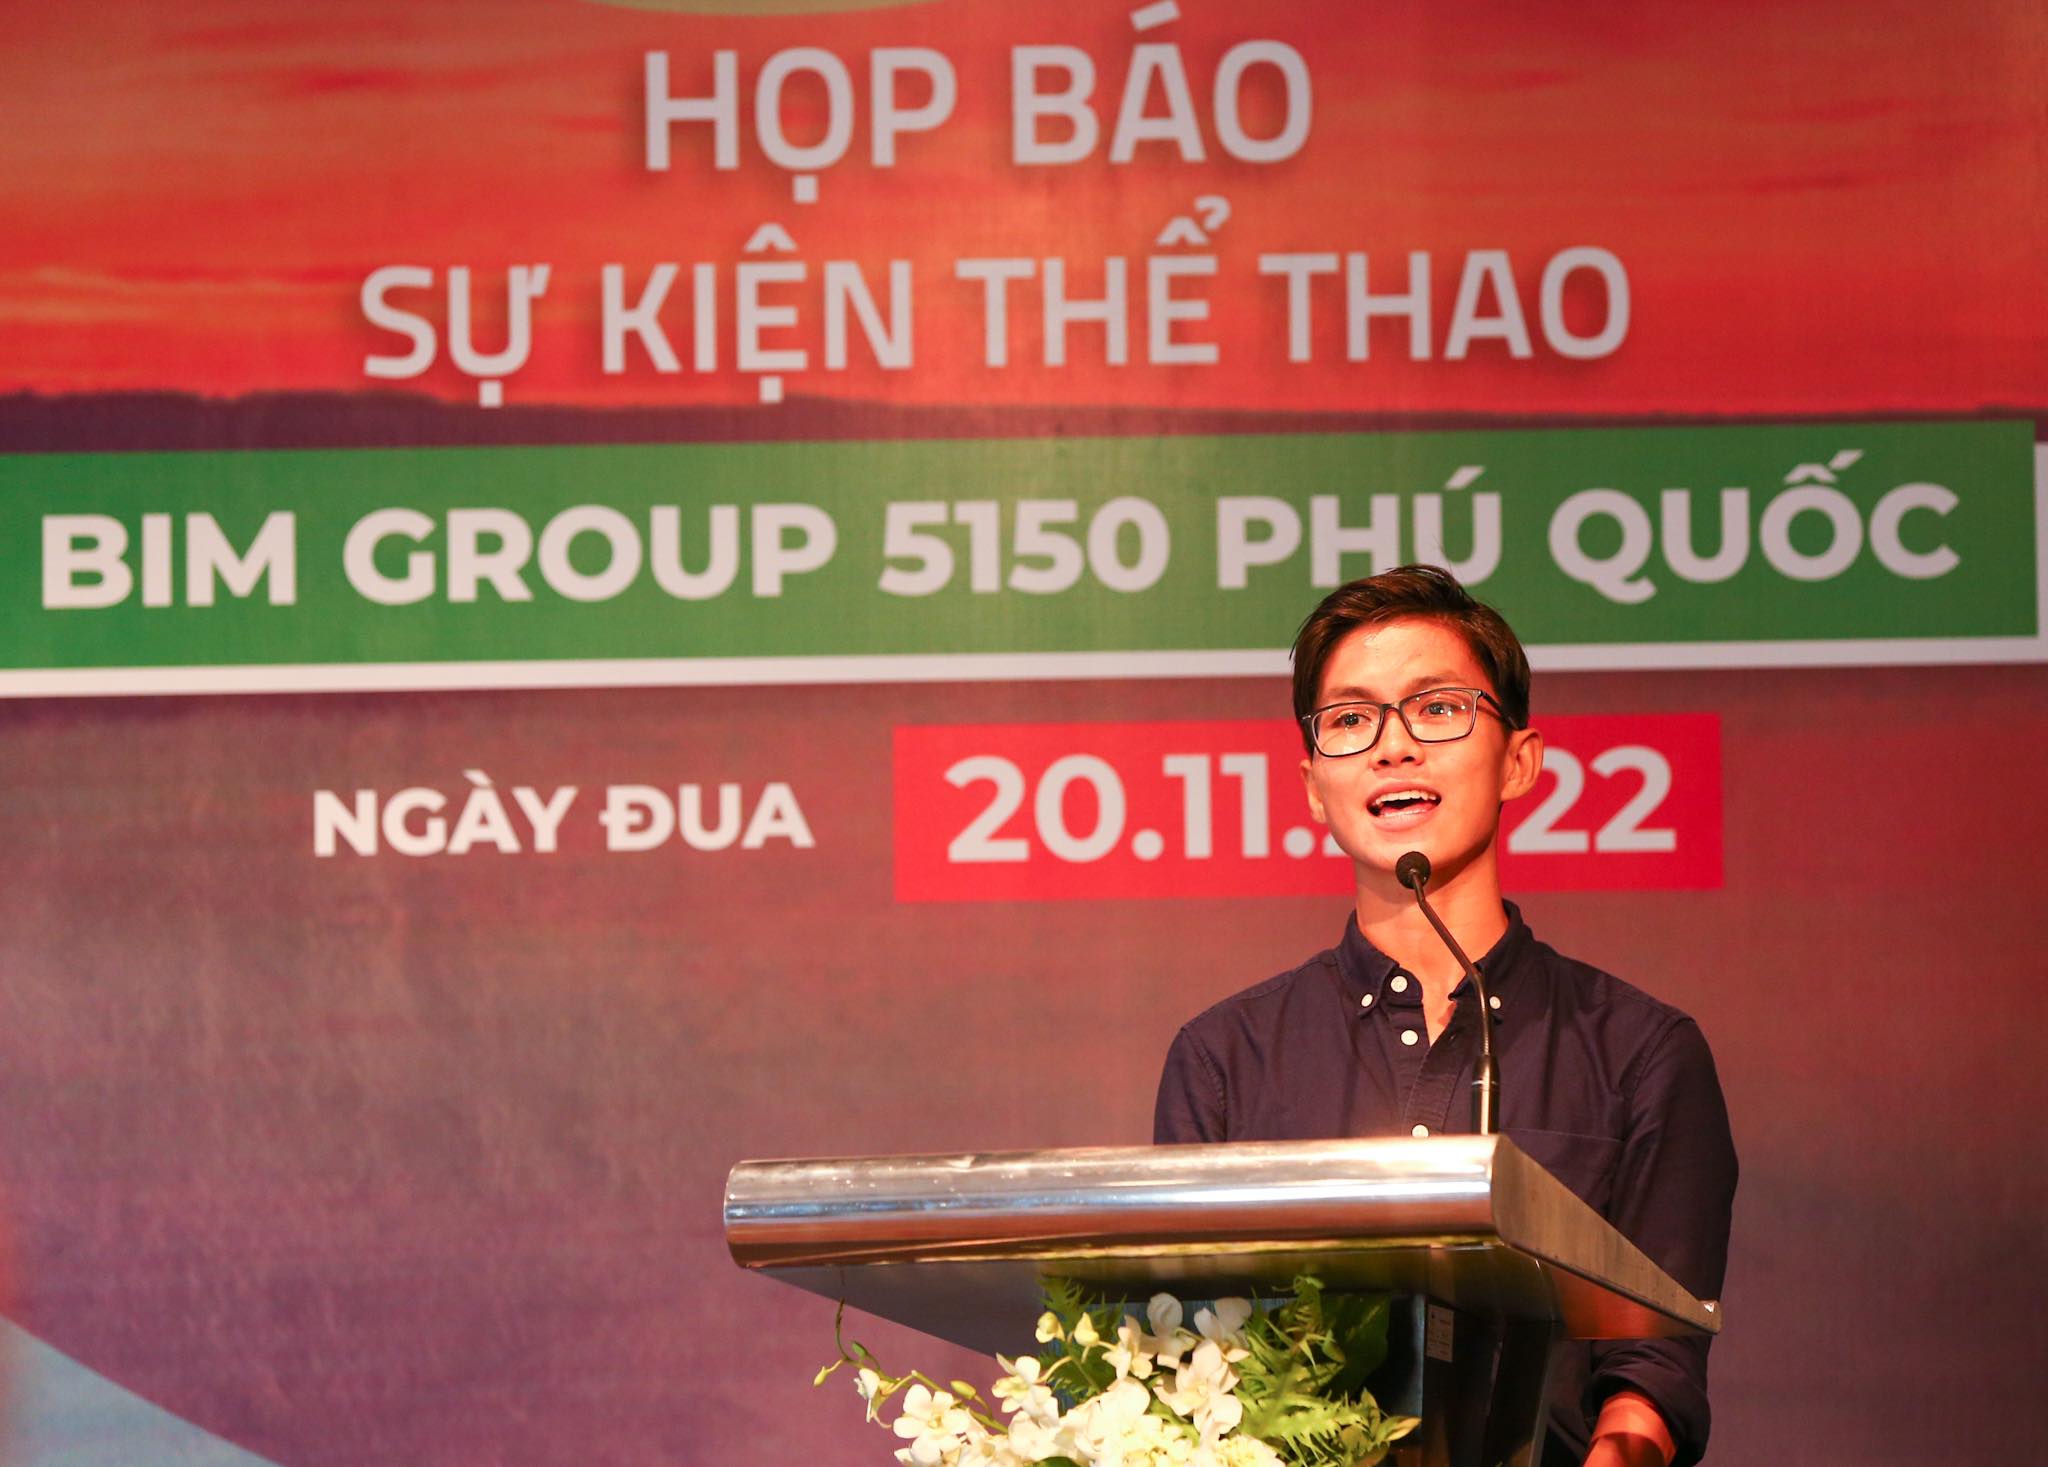 First 5150 triathlon series to take place in Vietnam next week